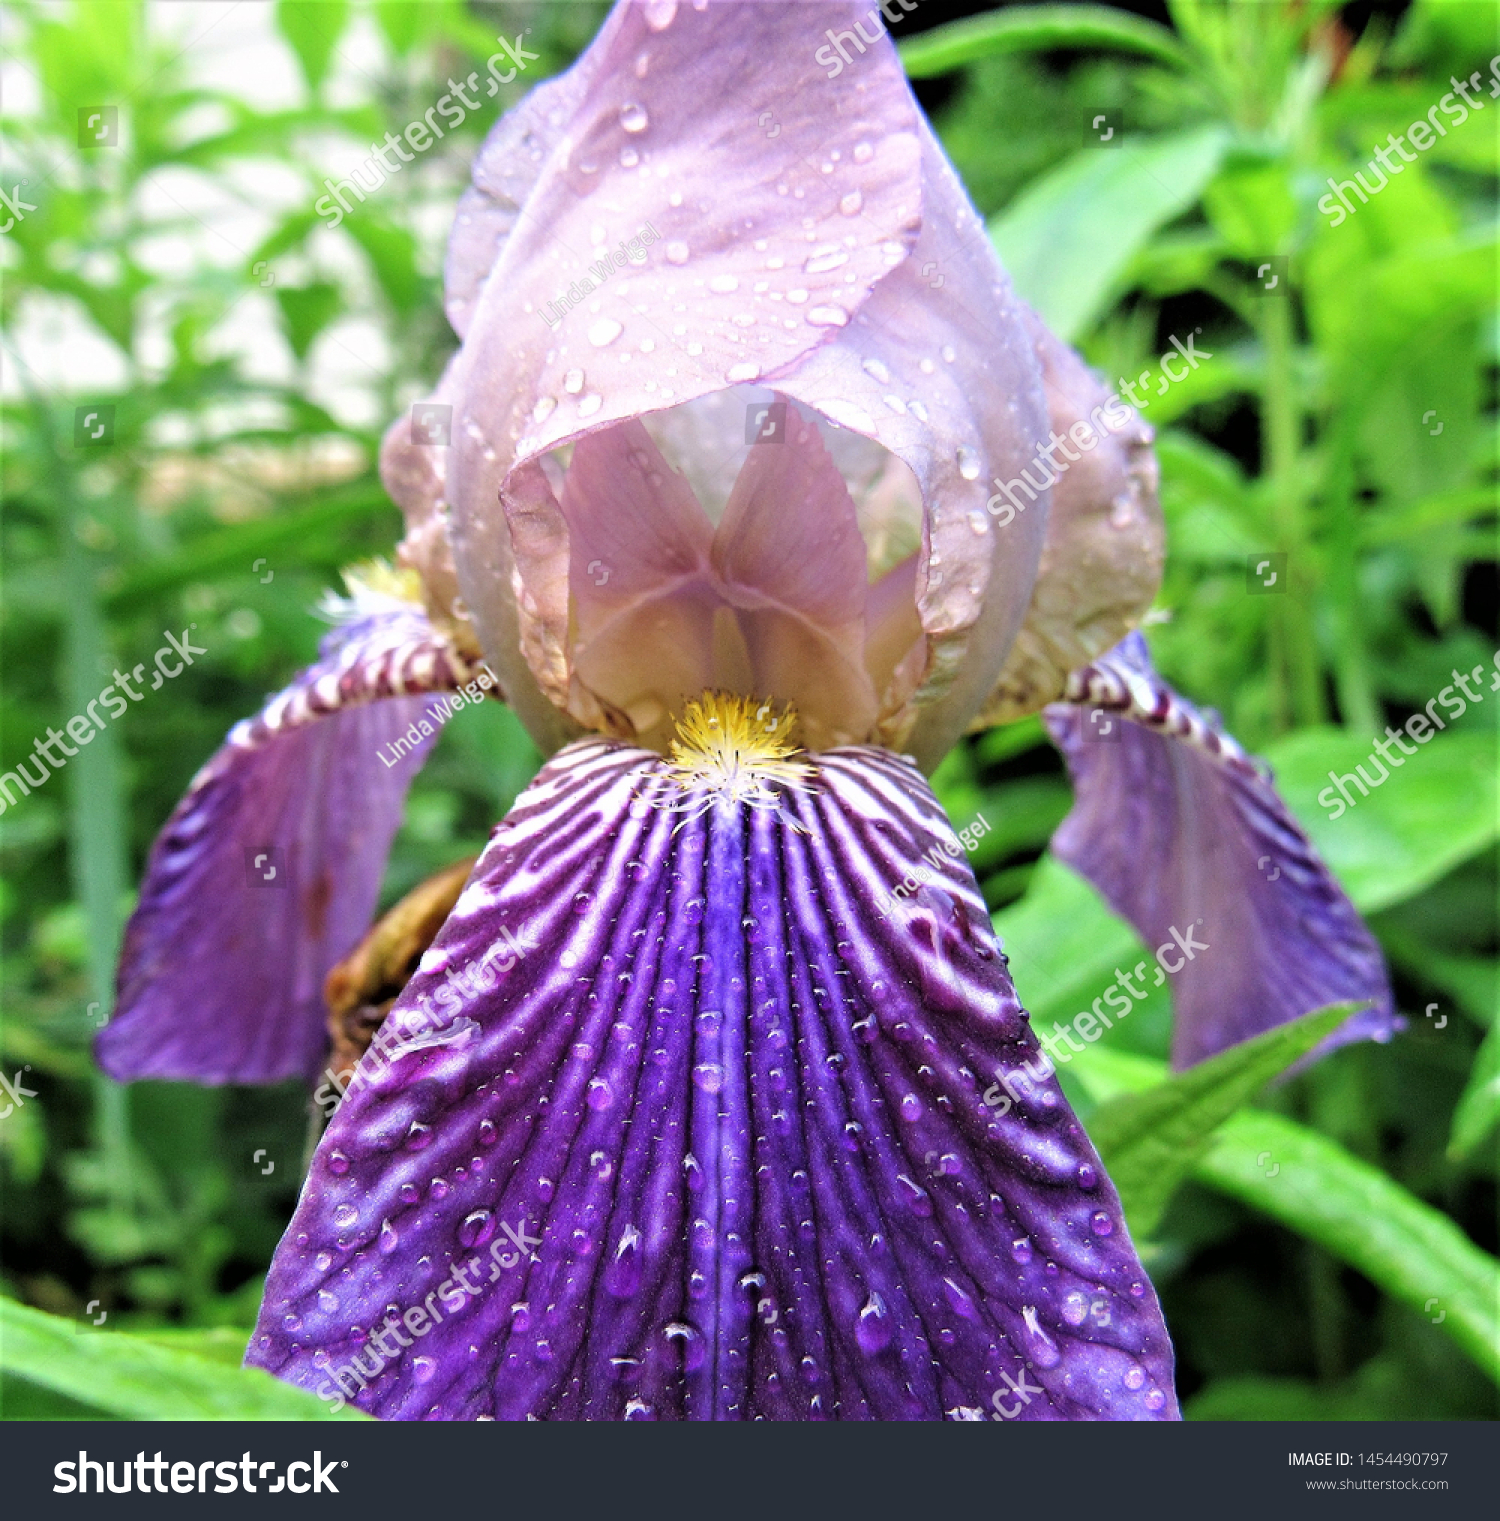 Inside a dewy purple iris #1454490797